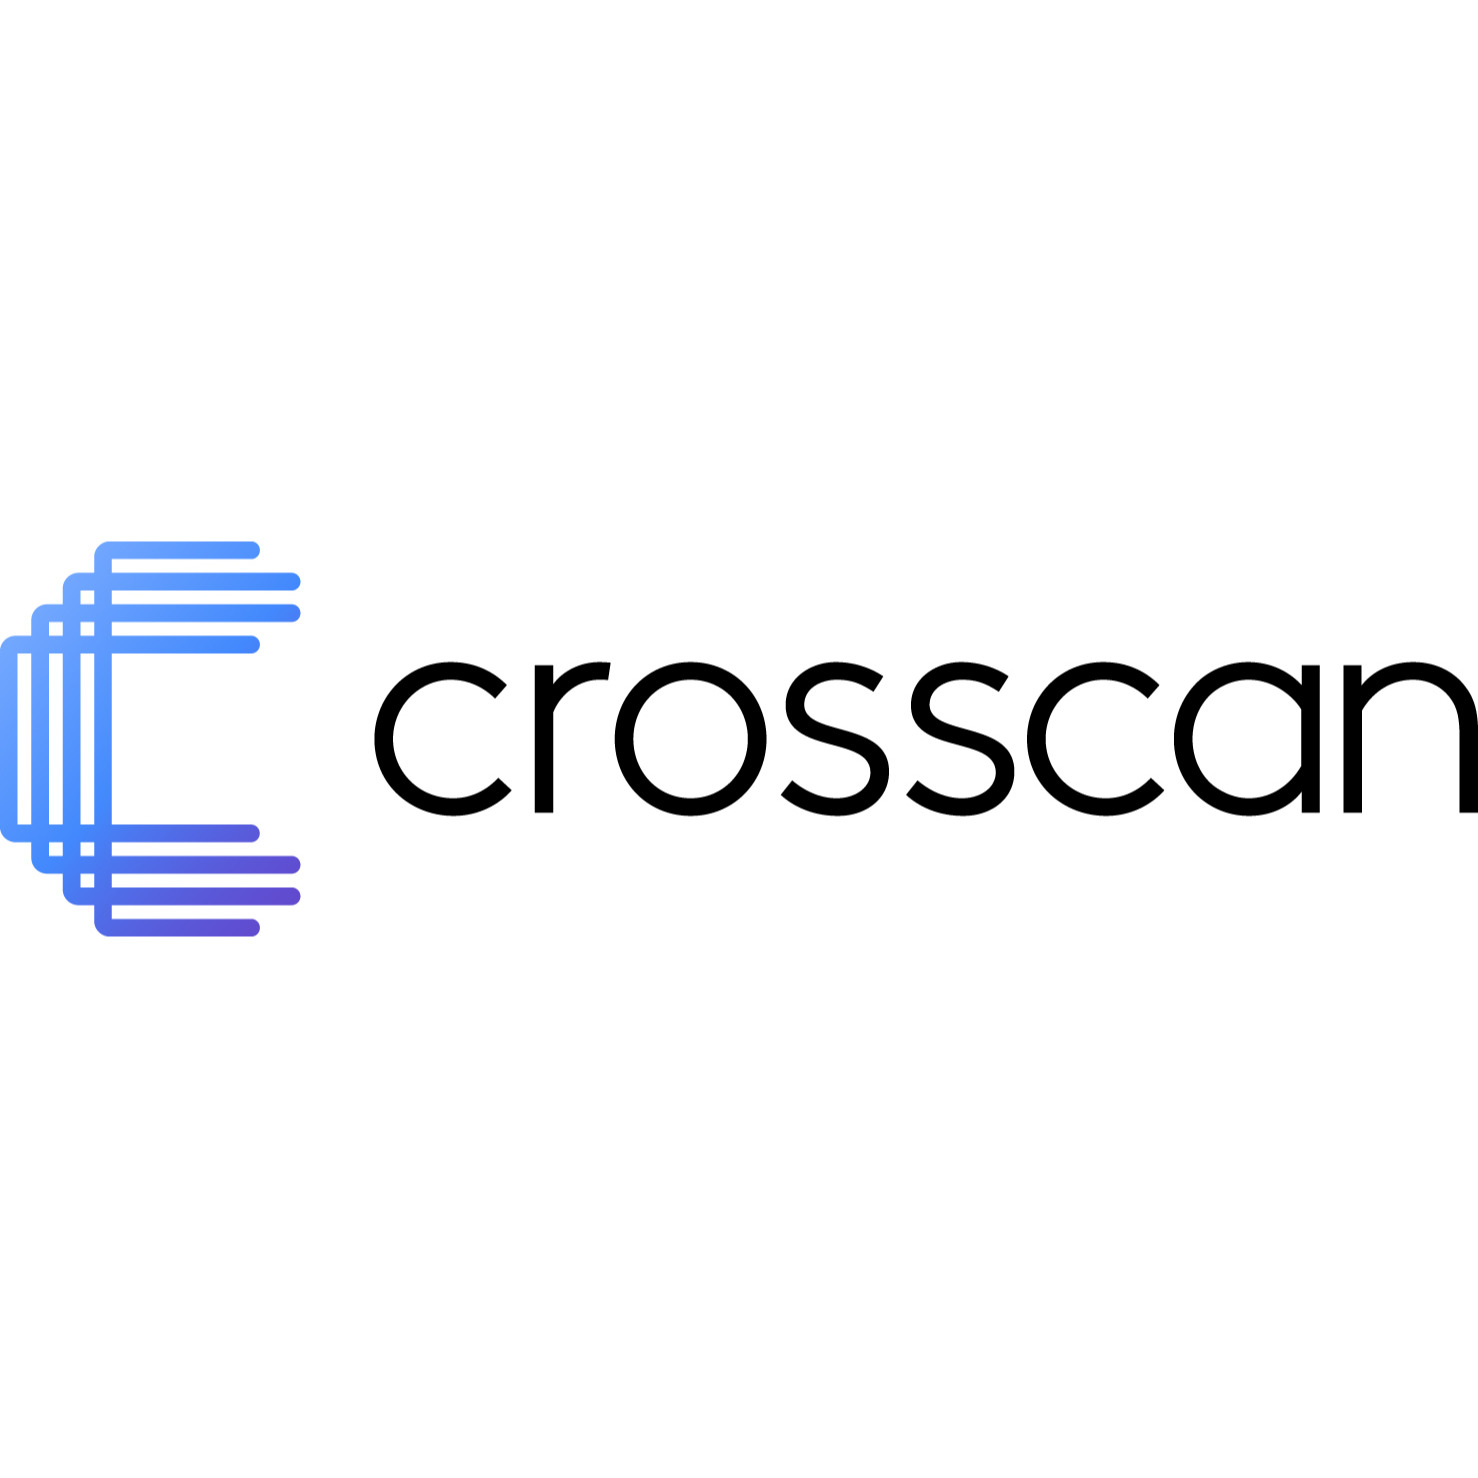 Crosscan Gesellschaft mit beschränkter Haftung in Witten - Logo